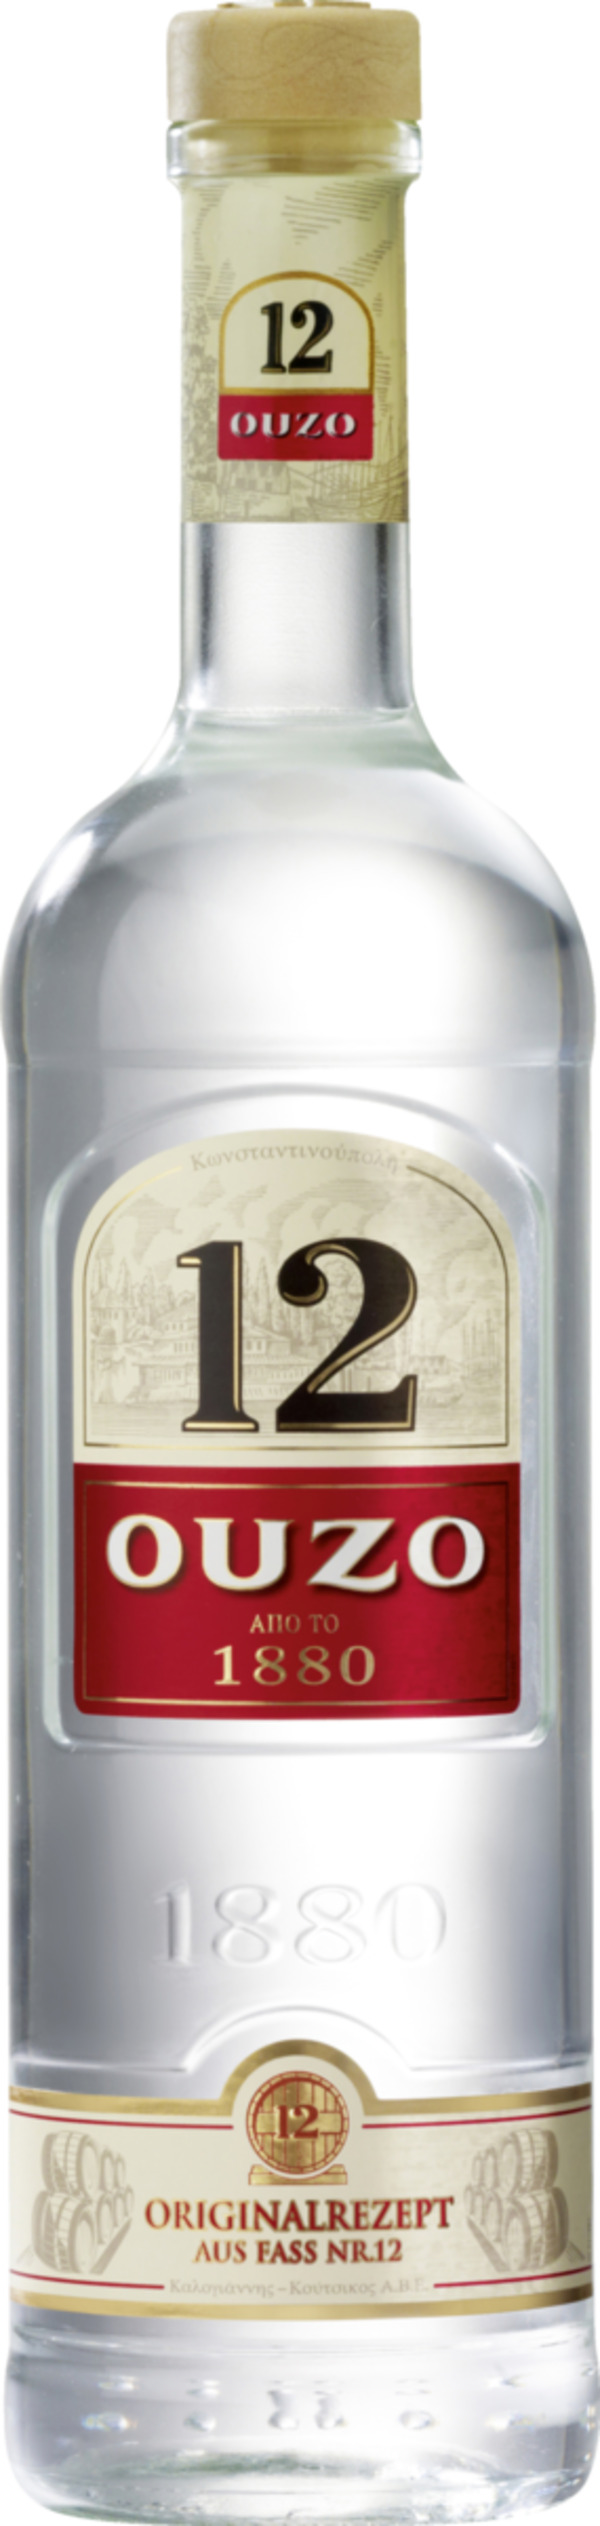 OUZO OUZO 12 von ROSSMANN für 10,99 € ansehen!